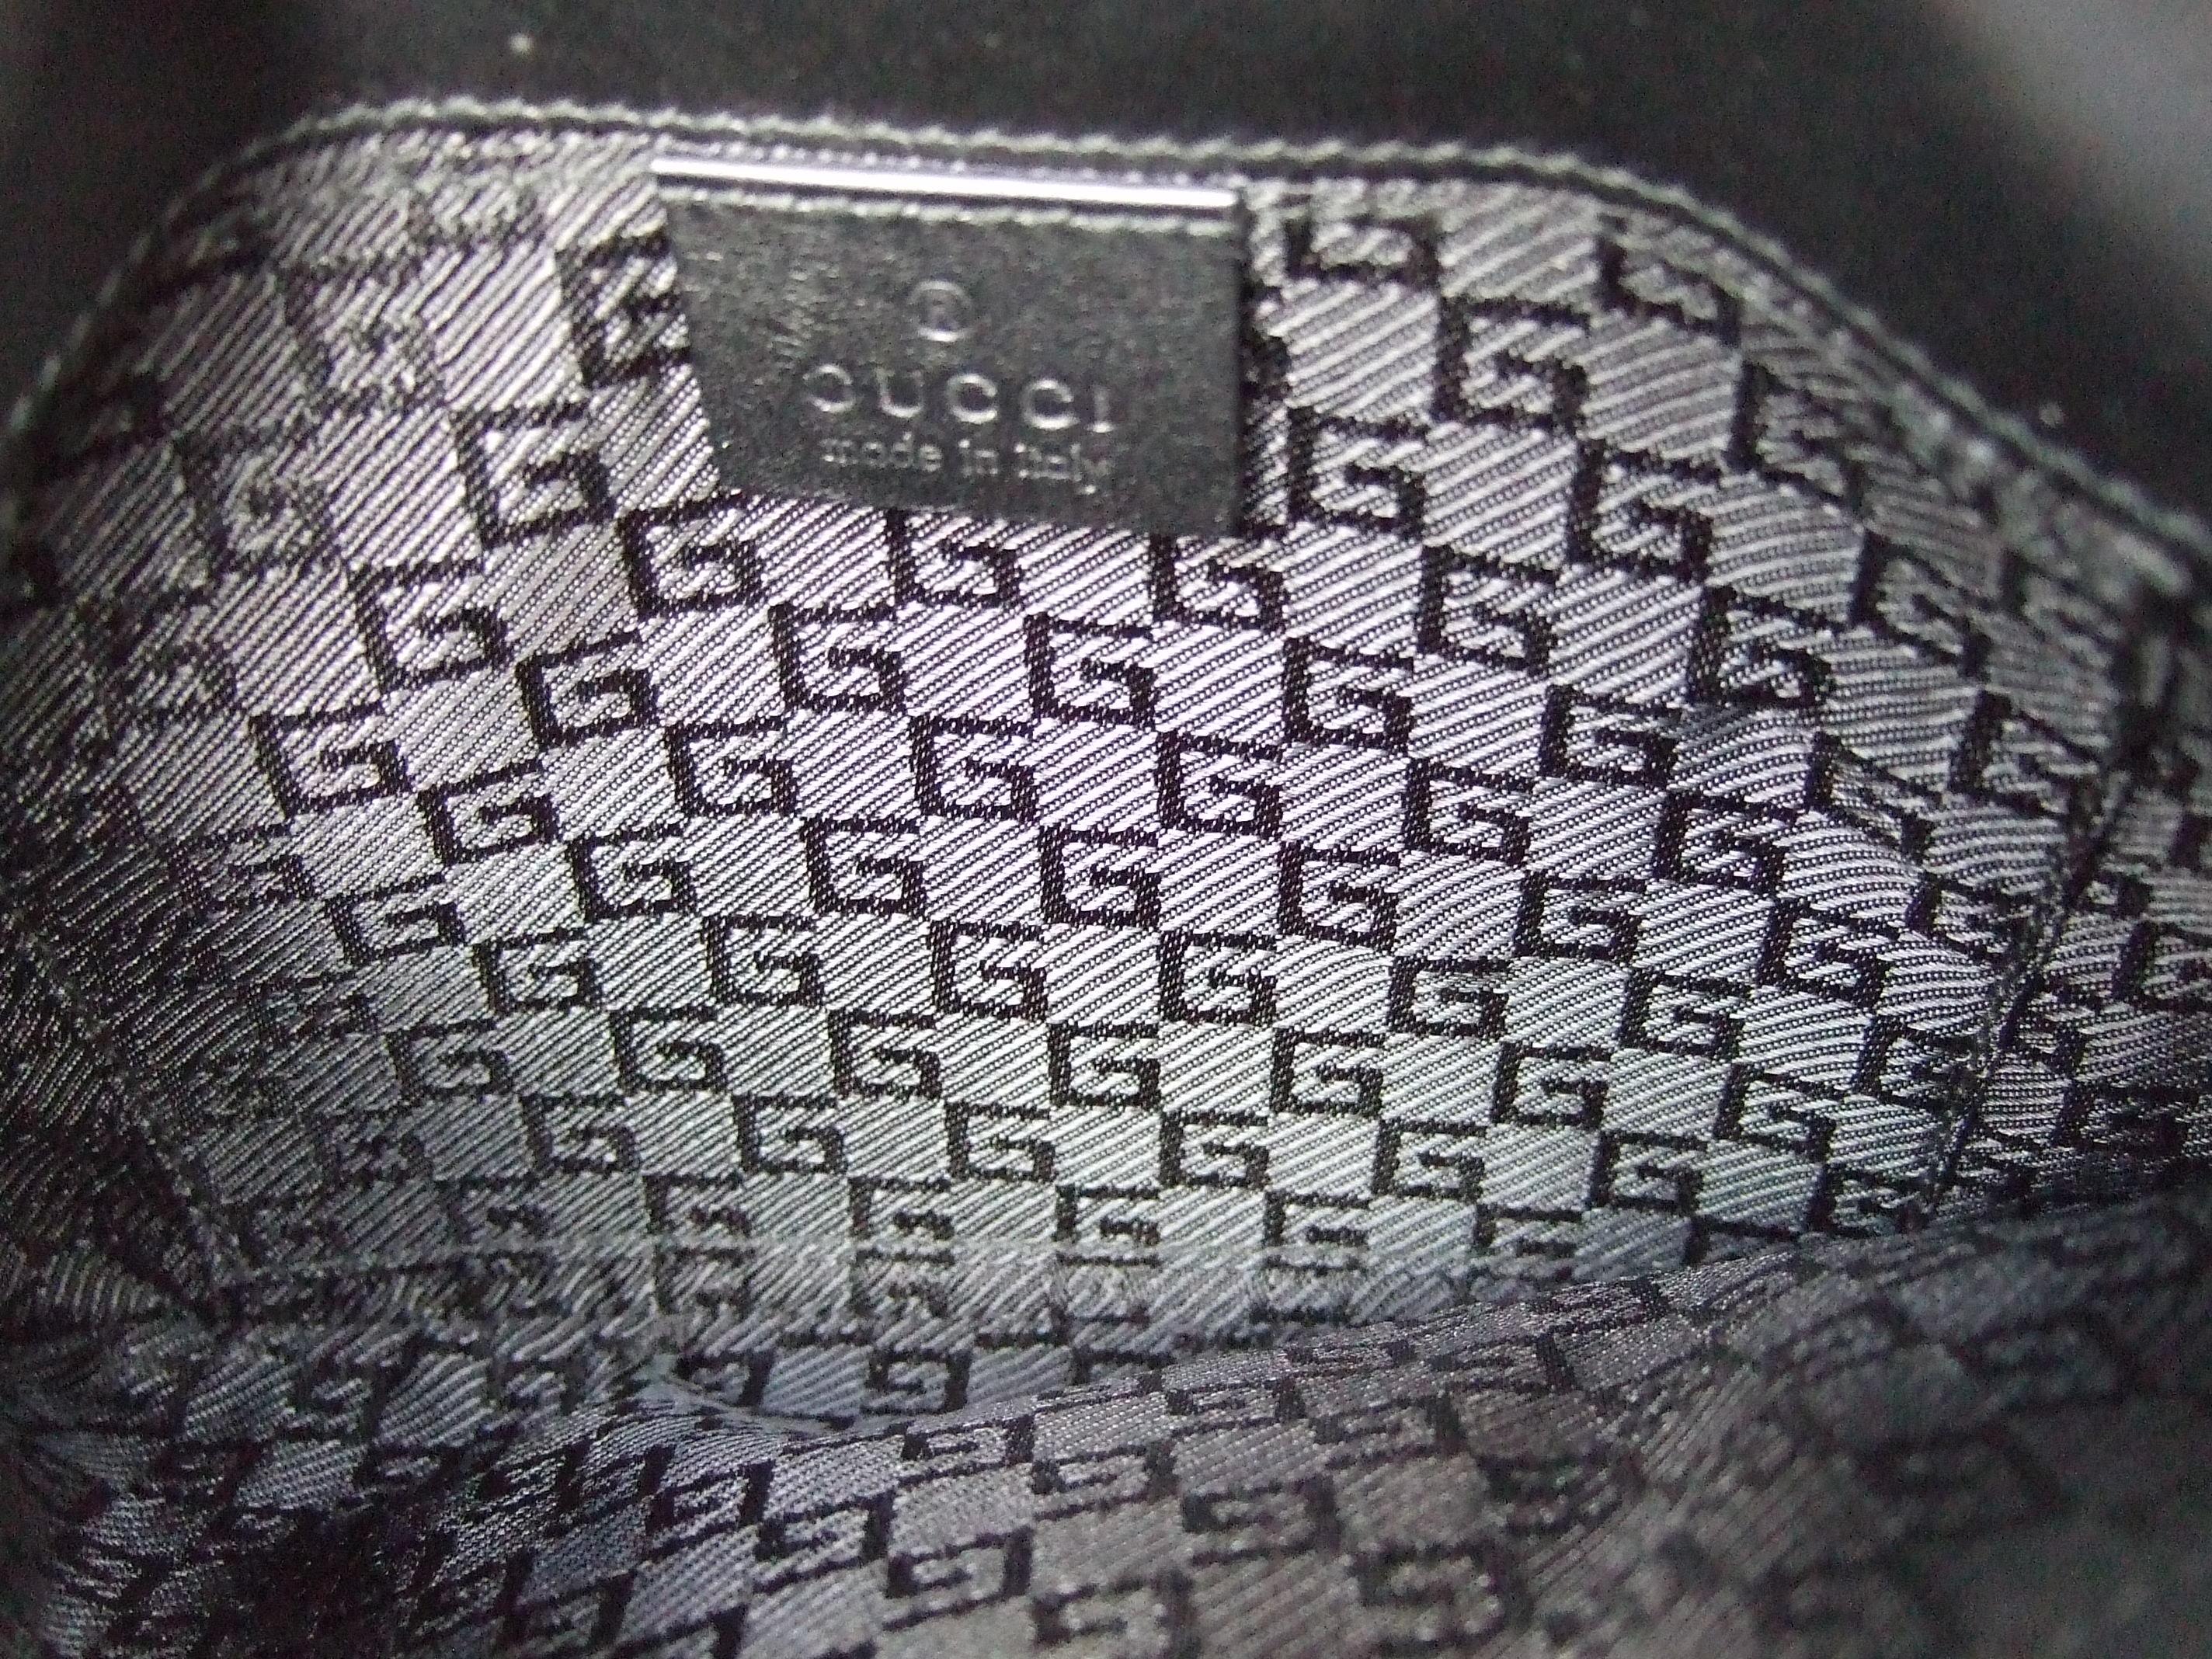 Gucci Italy Rare Black Suede Tiger Emblem Handbag Tom Ford Era c 2000 12